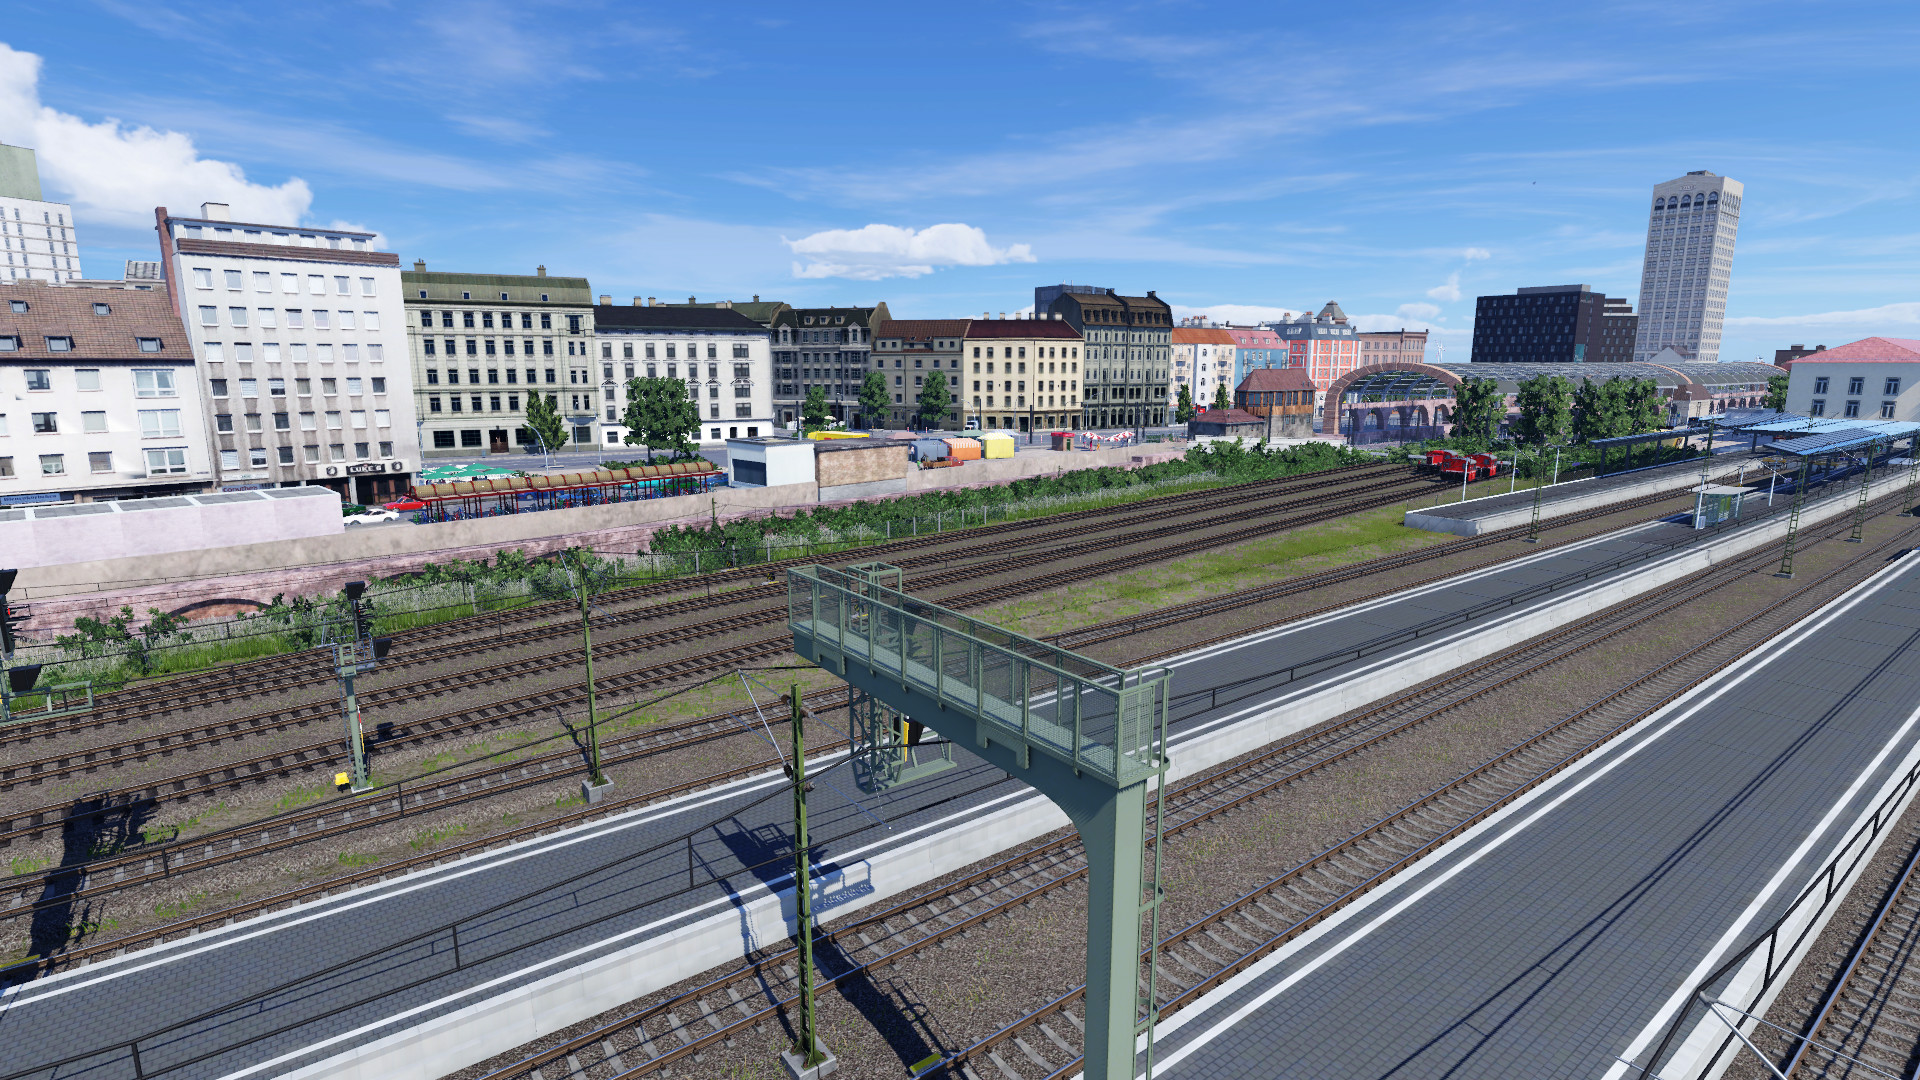 Häuserfront westlich des Hauptbahnhofs